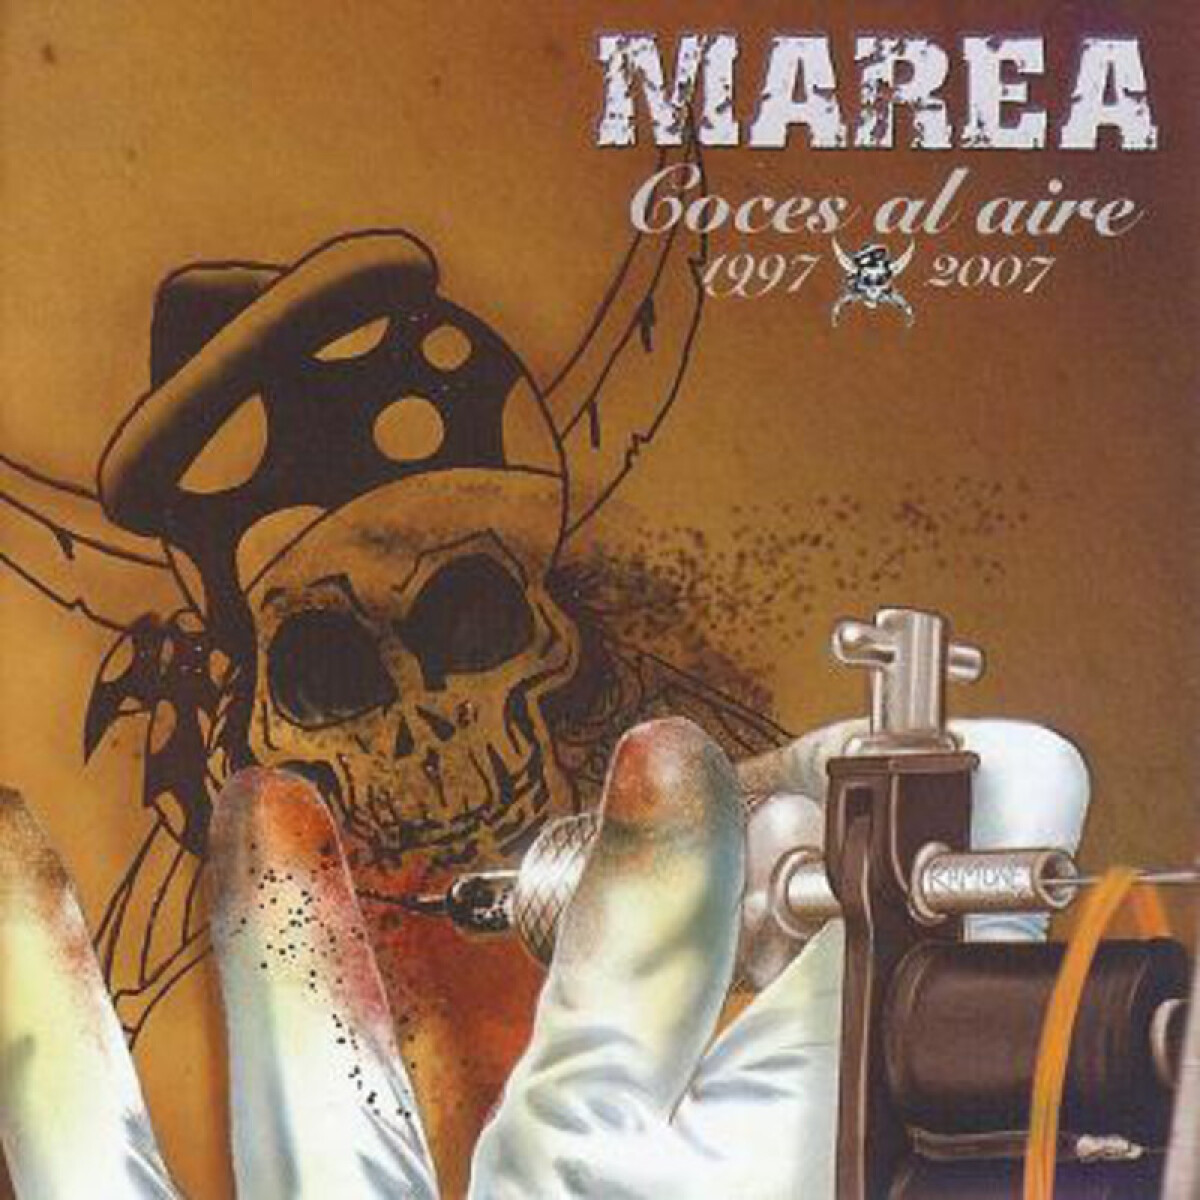 Marea-coces Al Aire (1997-2007) - Cd 